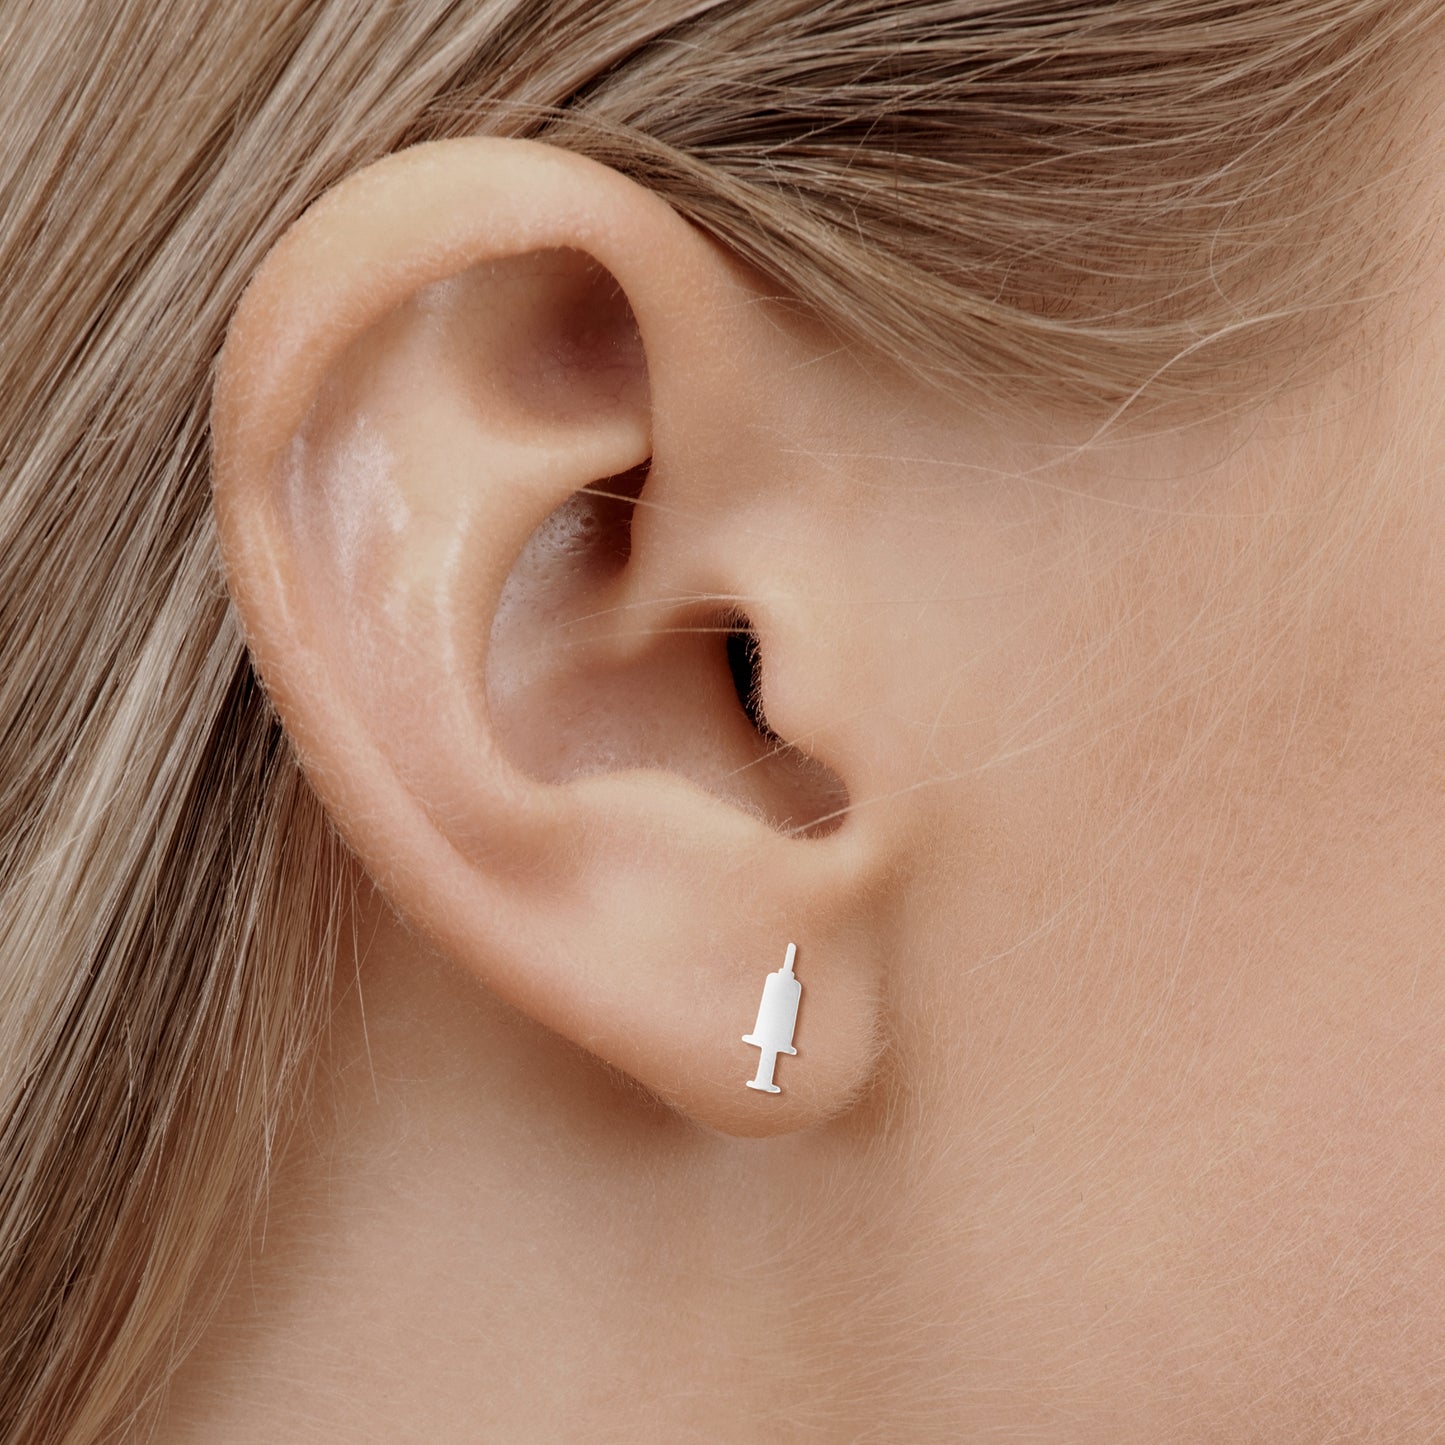 'IV Therapy Earrings' in silver on nurse model ear